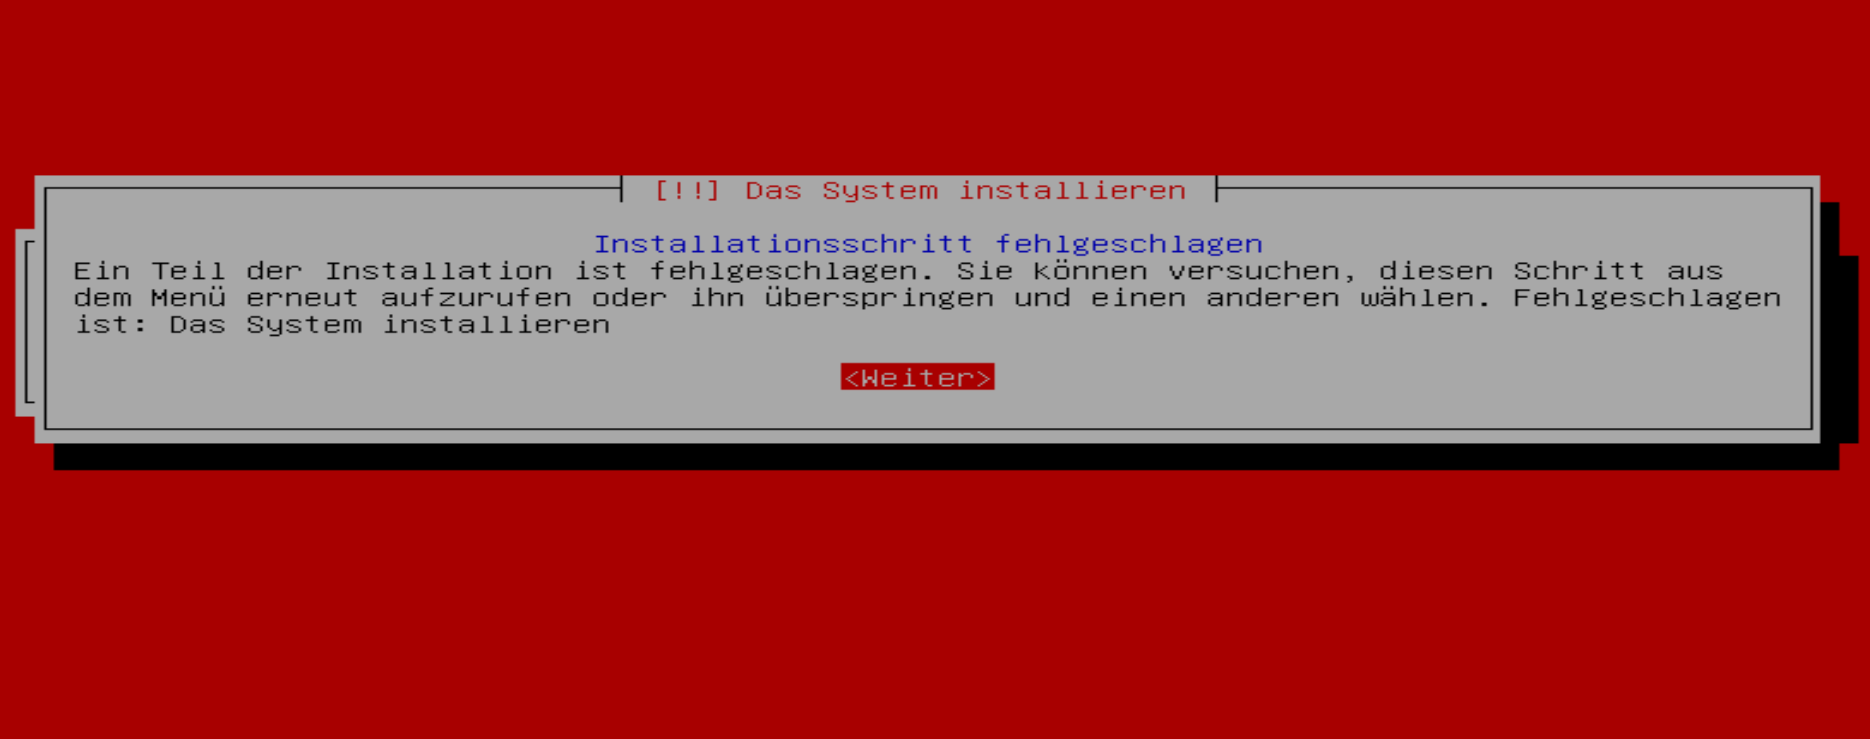 Your system failed. Install failed: installation failed.